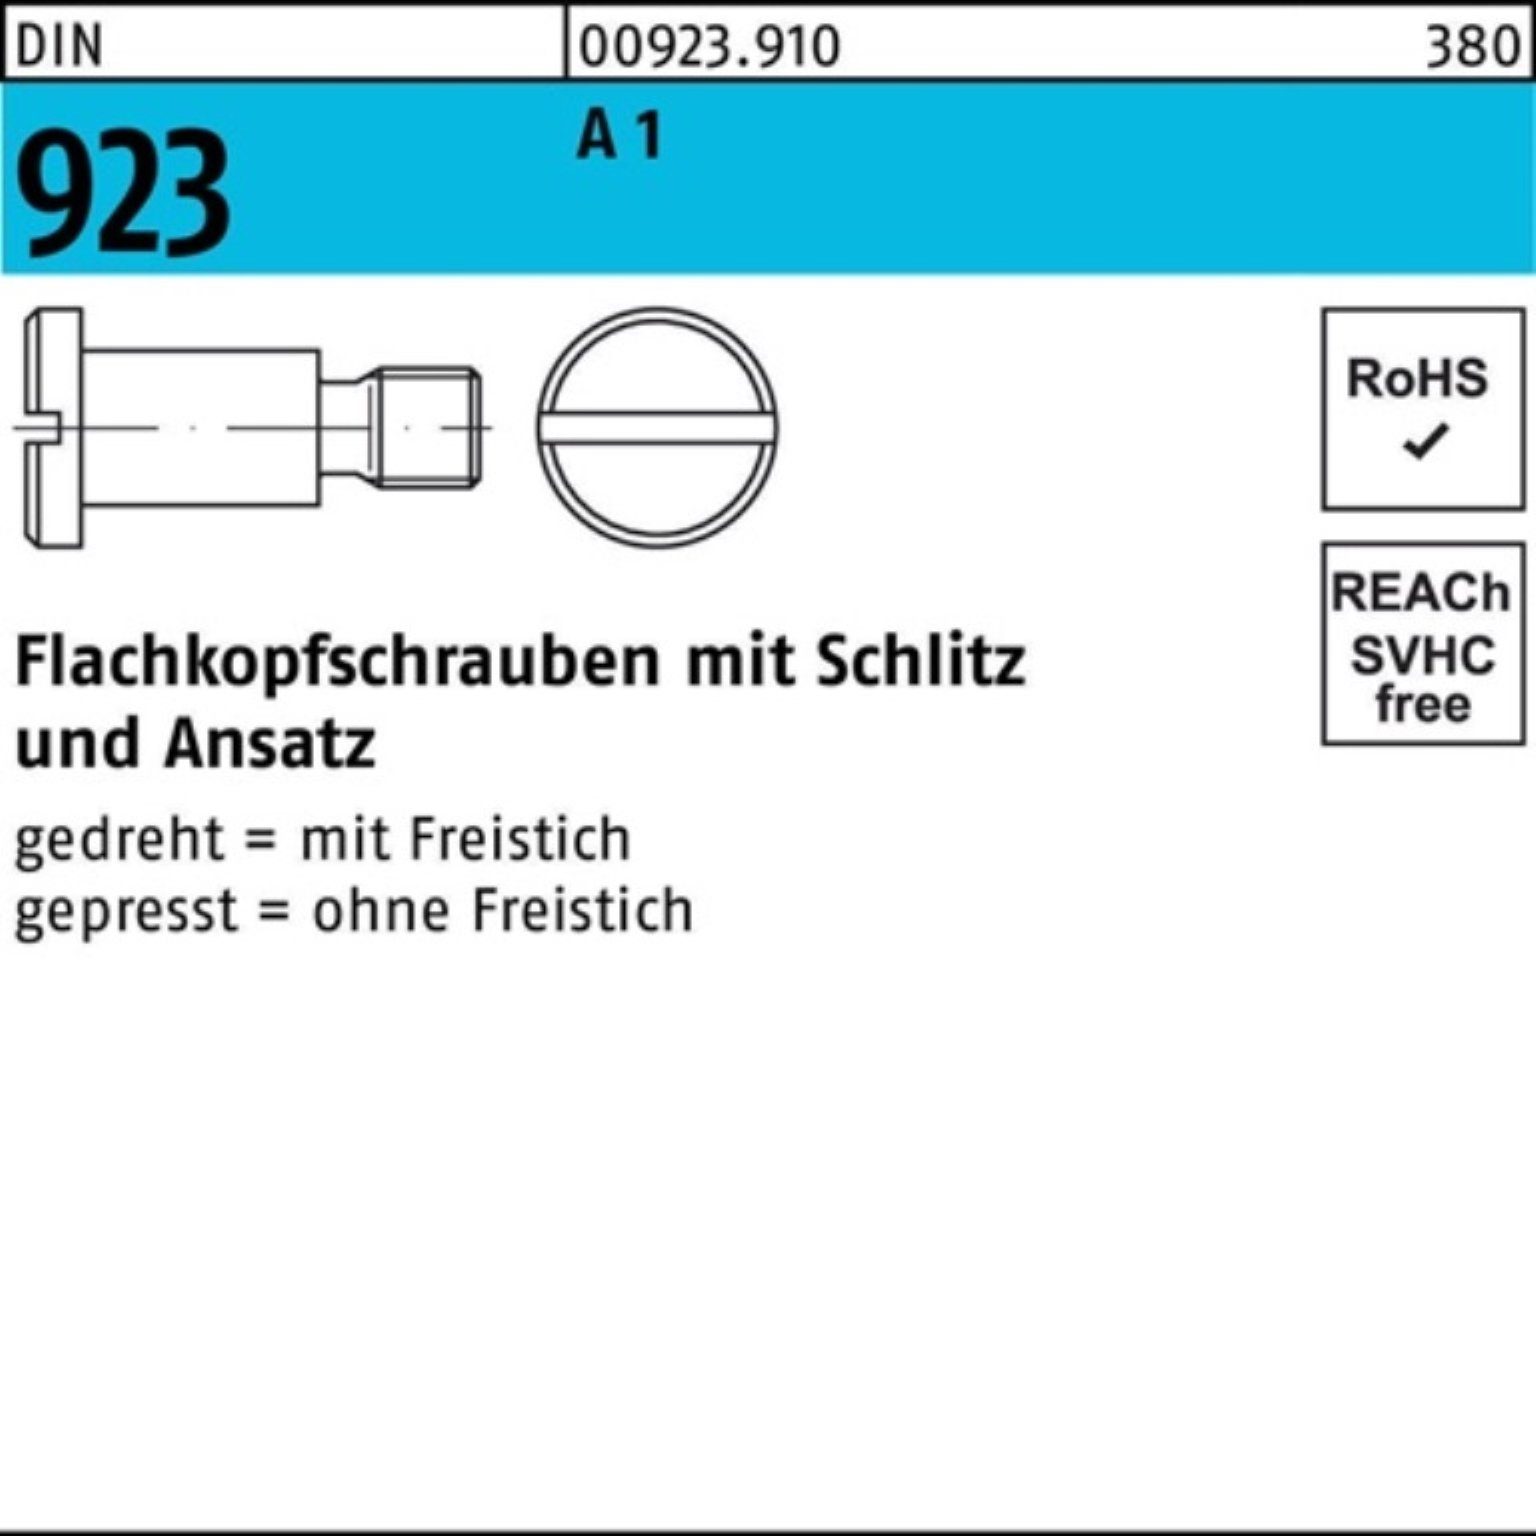 DIN Flachkopfschraube 923 Pack Schlitz/Ansatz 10x 10 M3x Reyher 100er 1 4,5 A Schraube